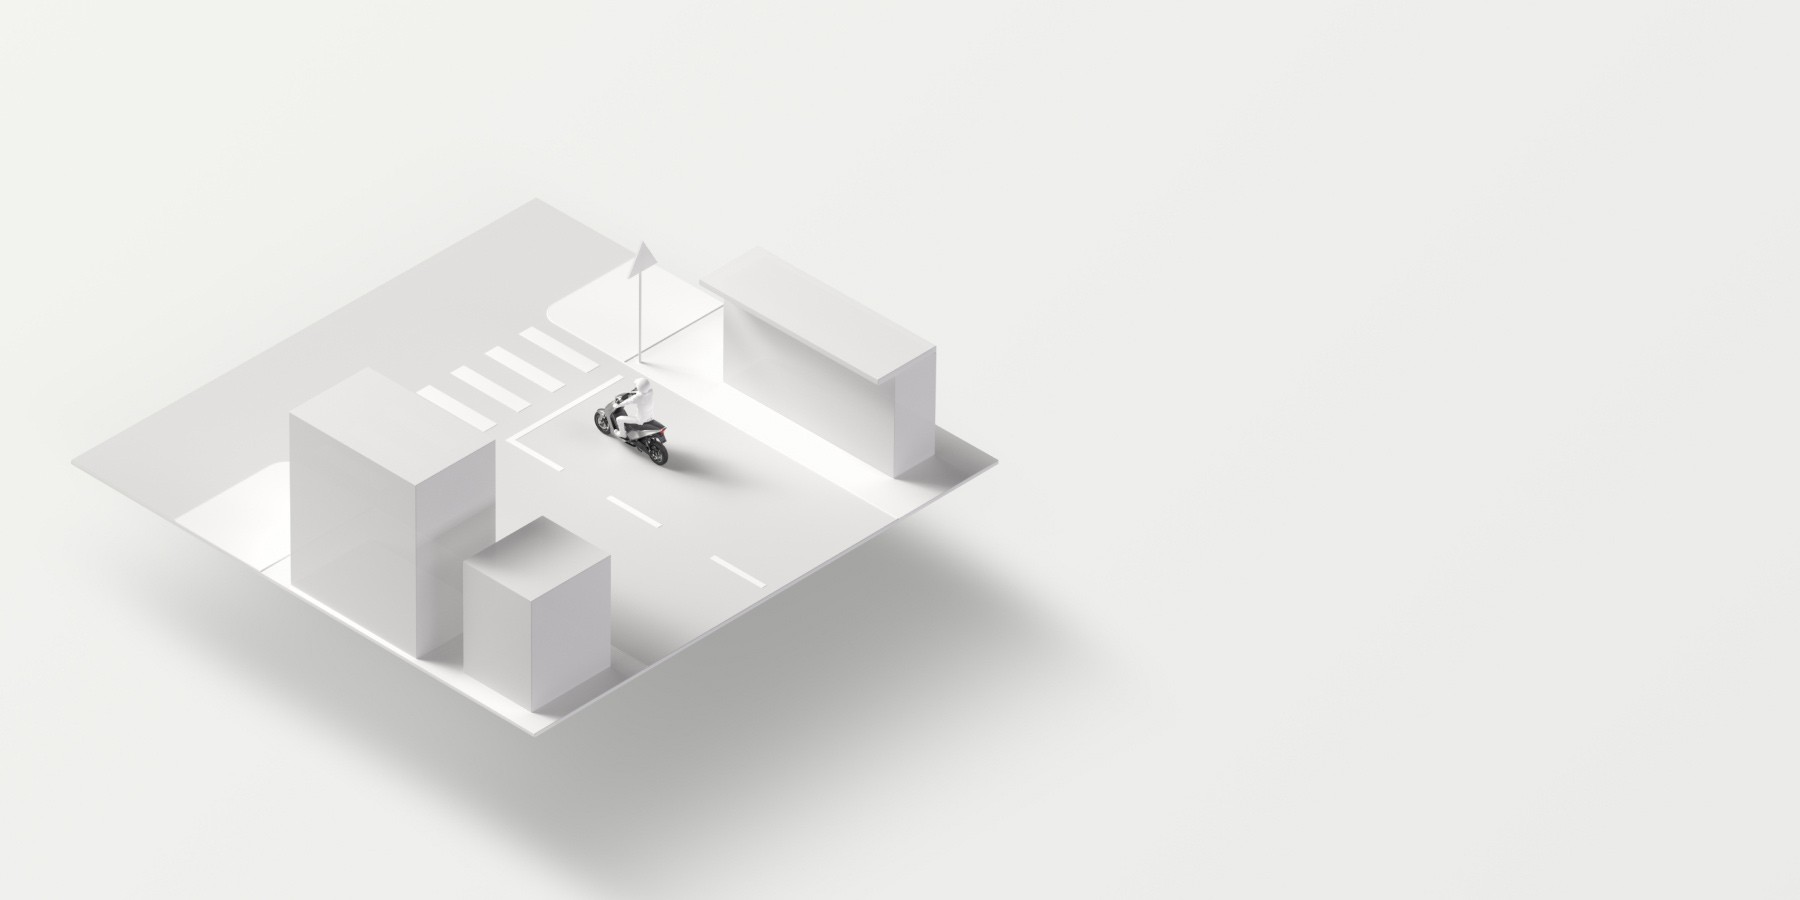 Abstrakte 3D-Visualisierung der Einsatzwecke von Bosch-Lösungen für Zweiräder und Powersports-Fahrzeuge für Überlandverkehr, Stadtverkehr, Lieferverkehr und Freizeitfahrten.